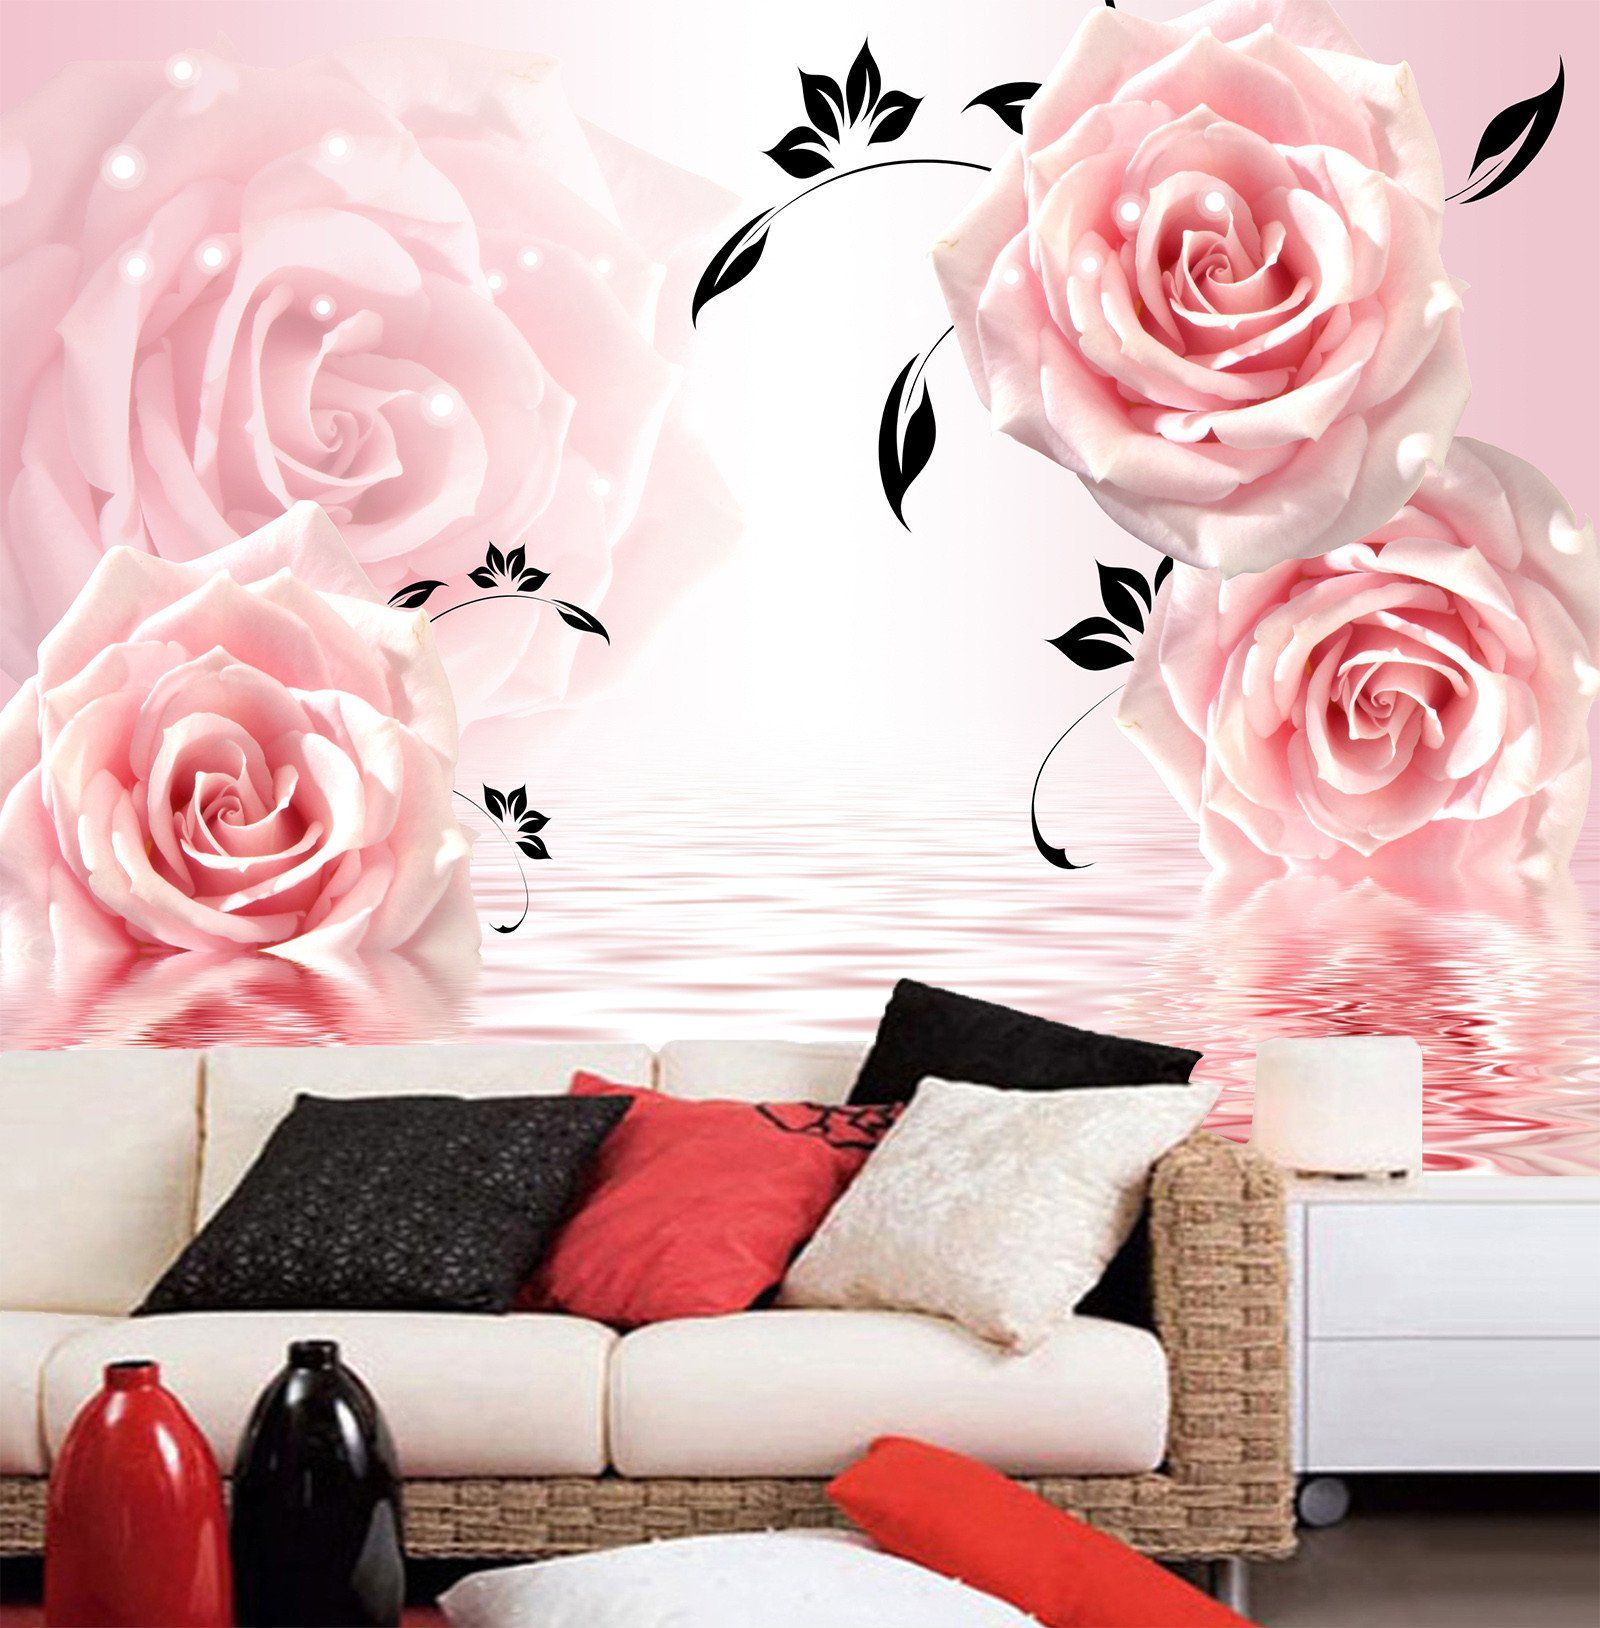 3D Elegant Pink Rose 852 Wallpaper AJ Wallpaper 